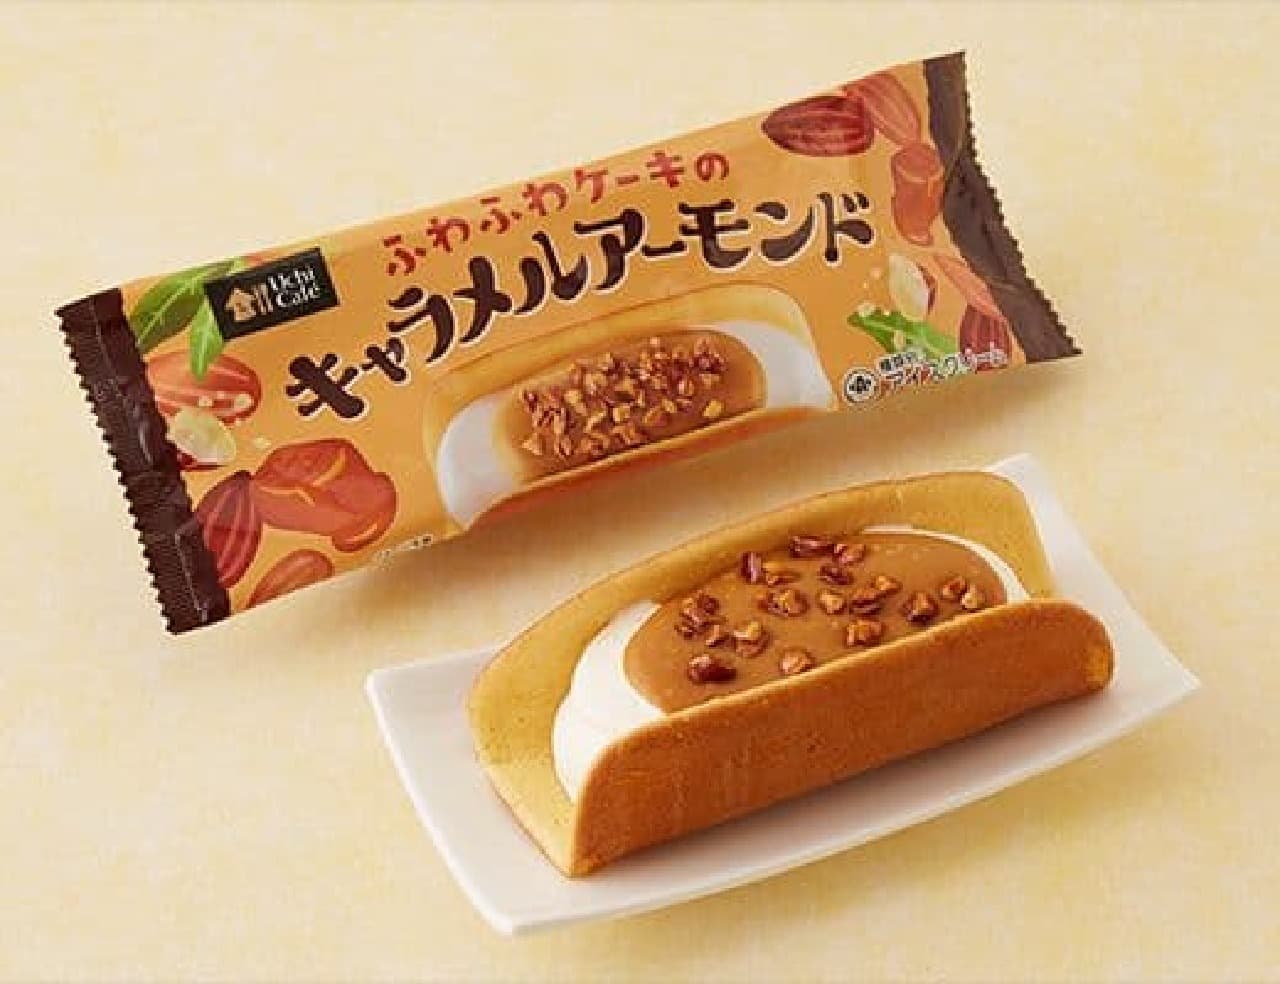 Lawson "Uchi Cafe Fluffy Cake Caramel Almond 68ml (2.3us fl oz)"